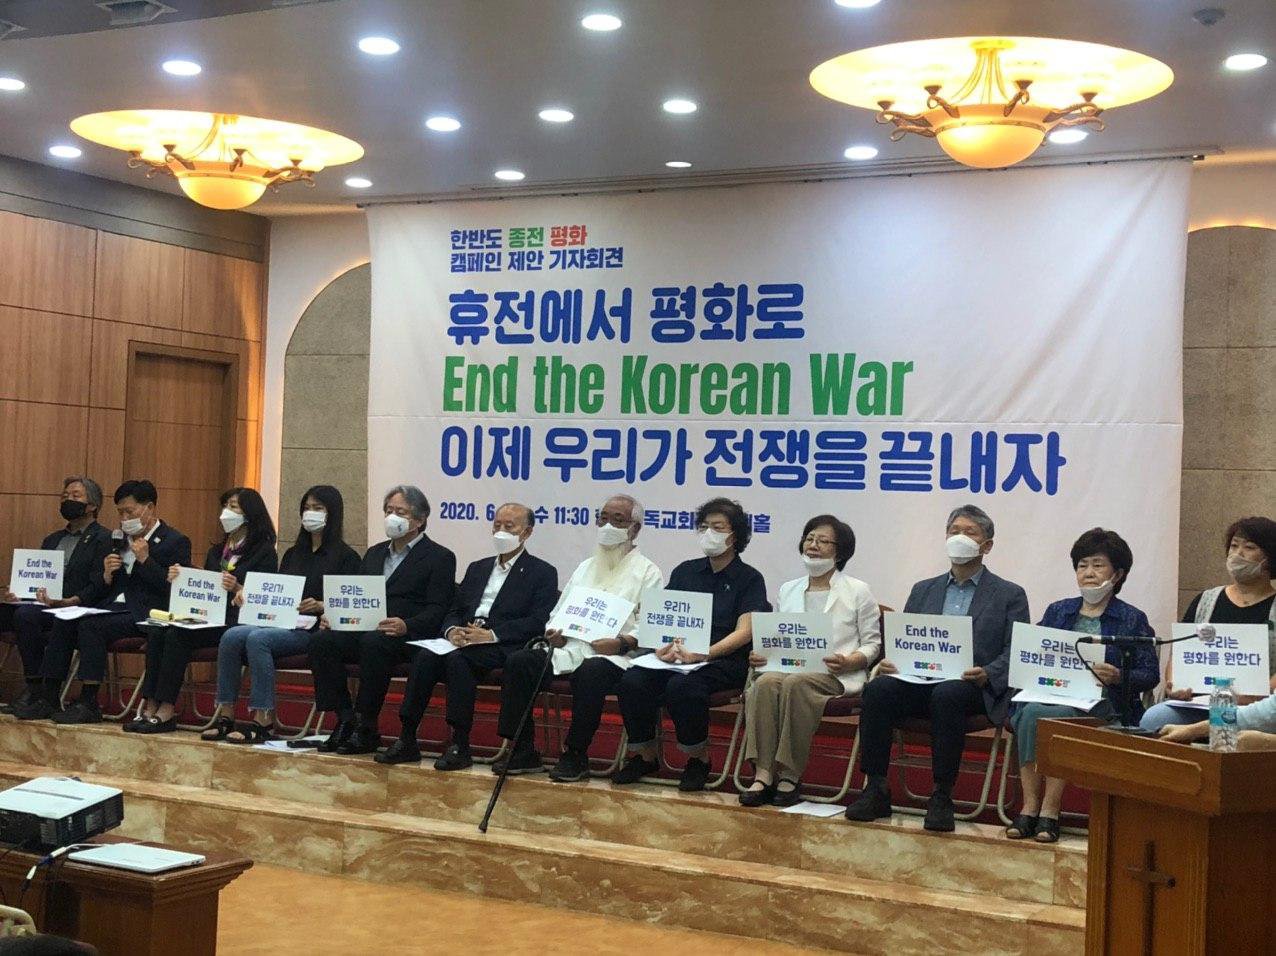 한반도 평화를 꿈꾸는 국내시민사회가 6월 24일(수) 한국전쟁 종전 캠페인을 제안하는 기자회견을 열었습니다